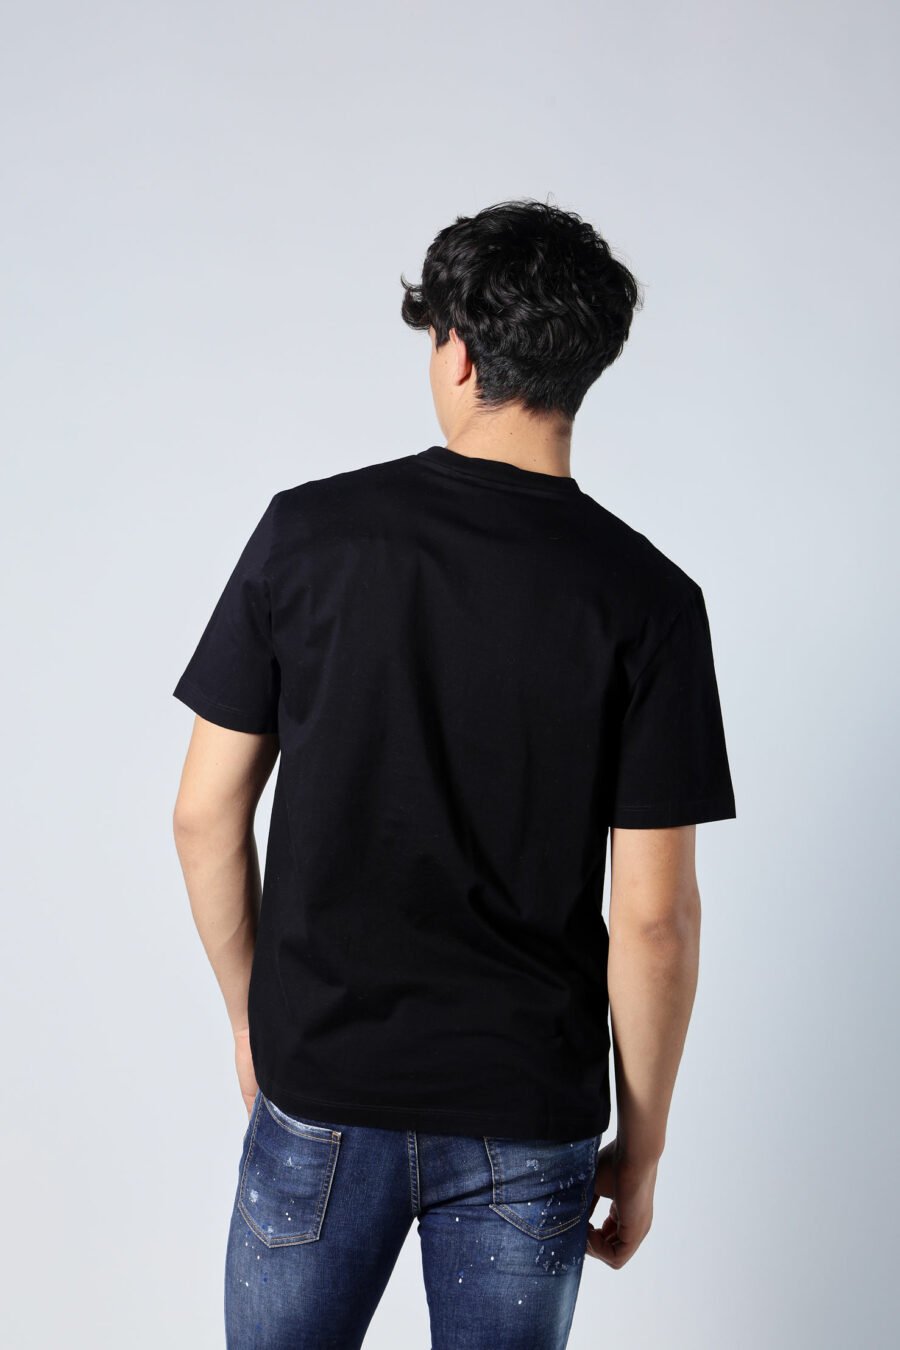 Schwarzes T-Shirt mit weißem Minilogue "fett" und orange Blatt - Untitled Catalog 05671